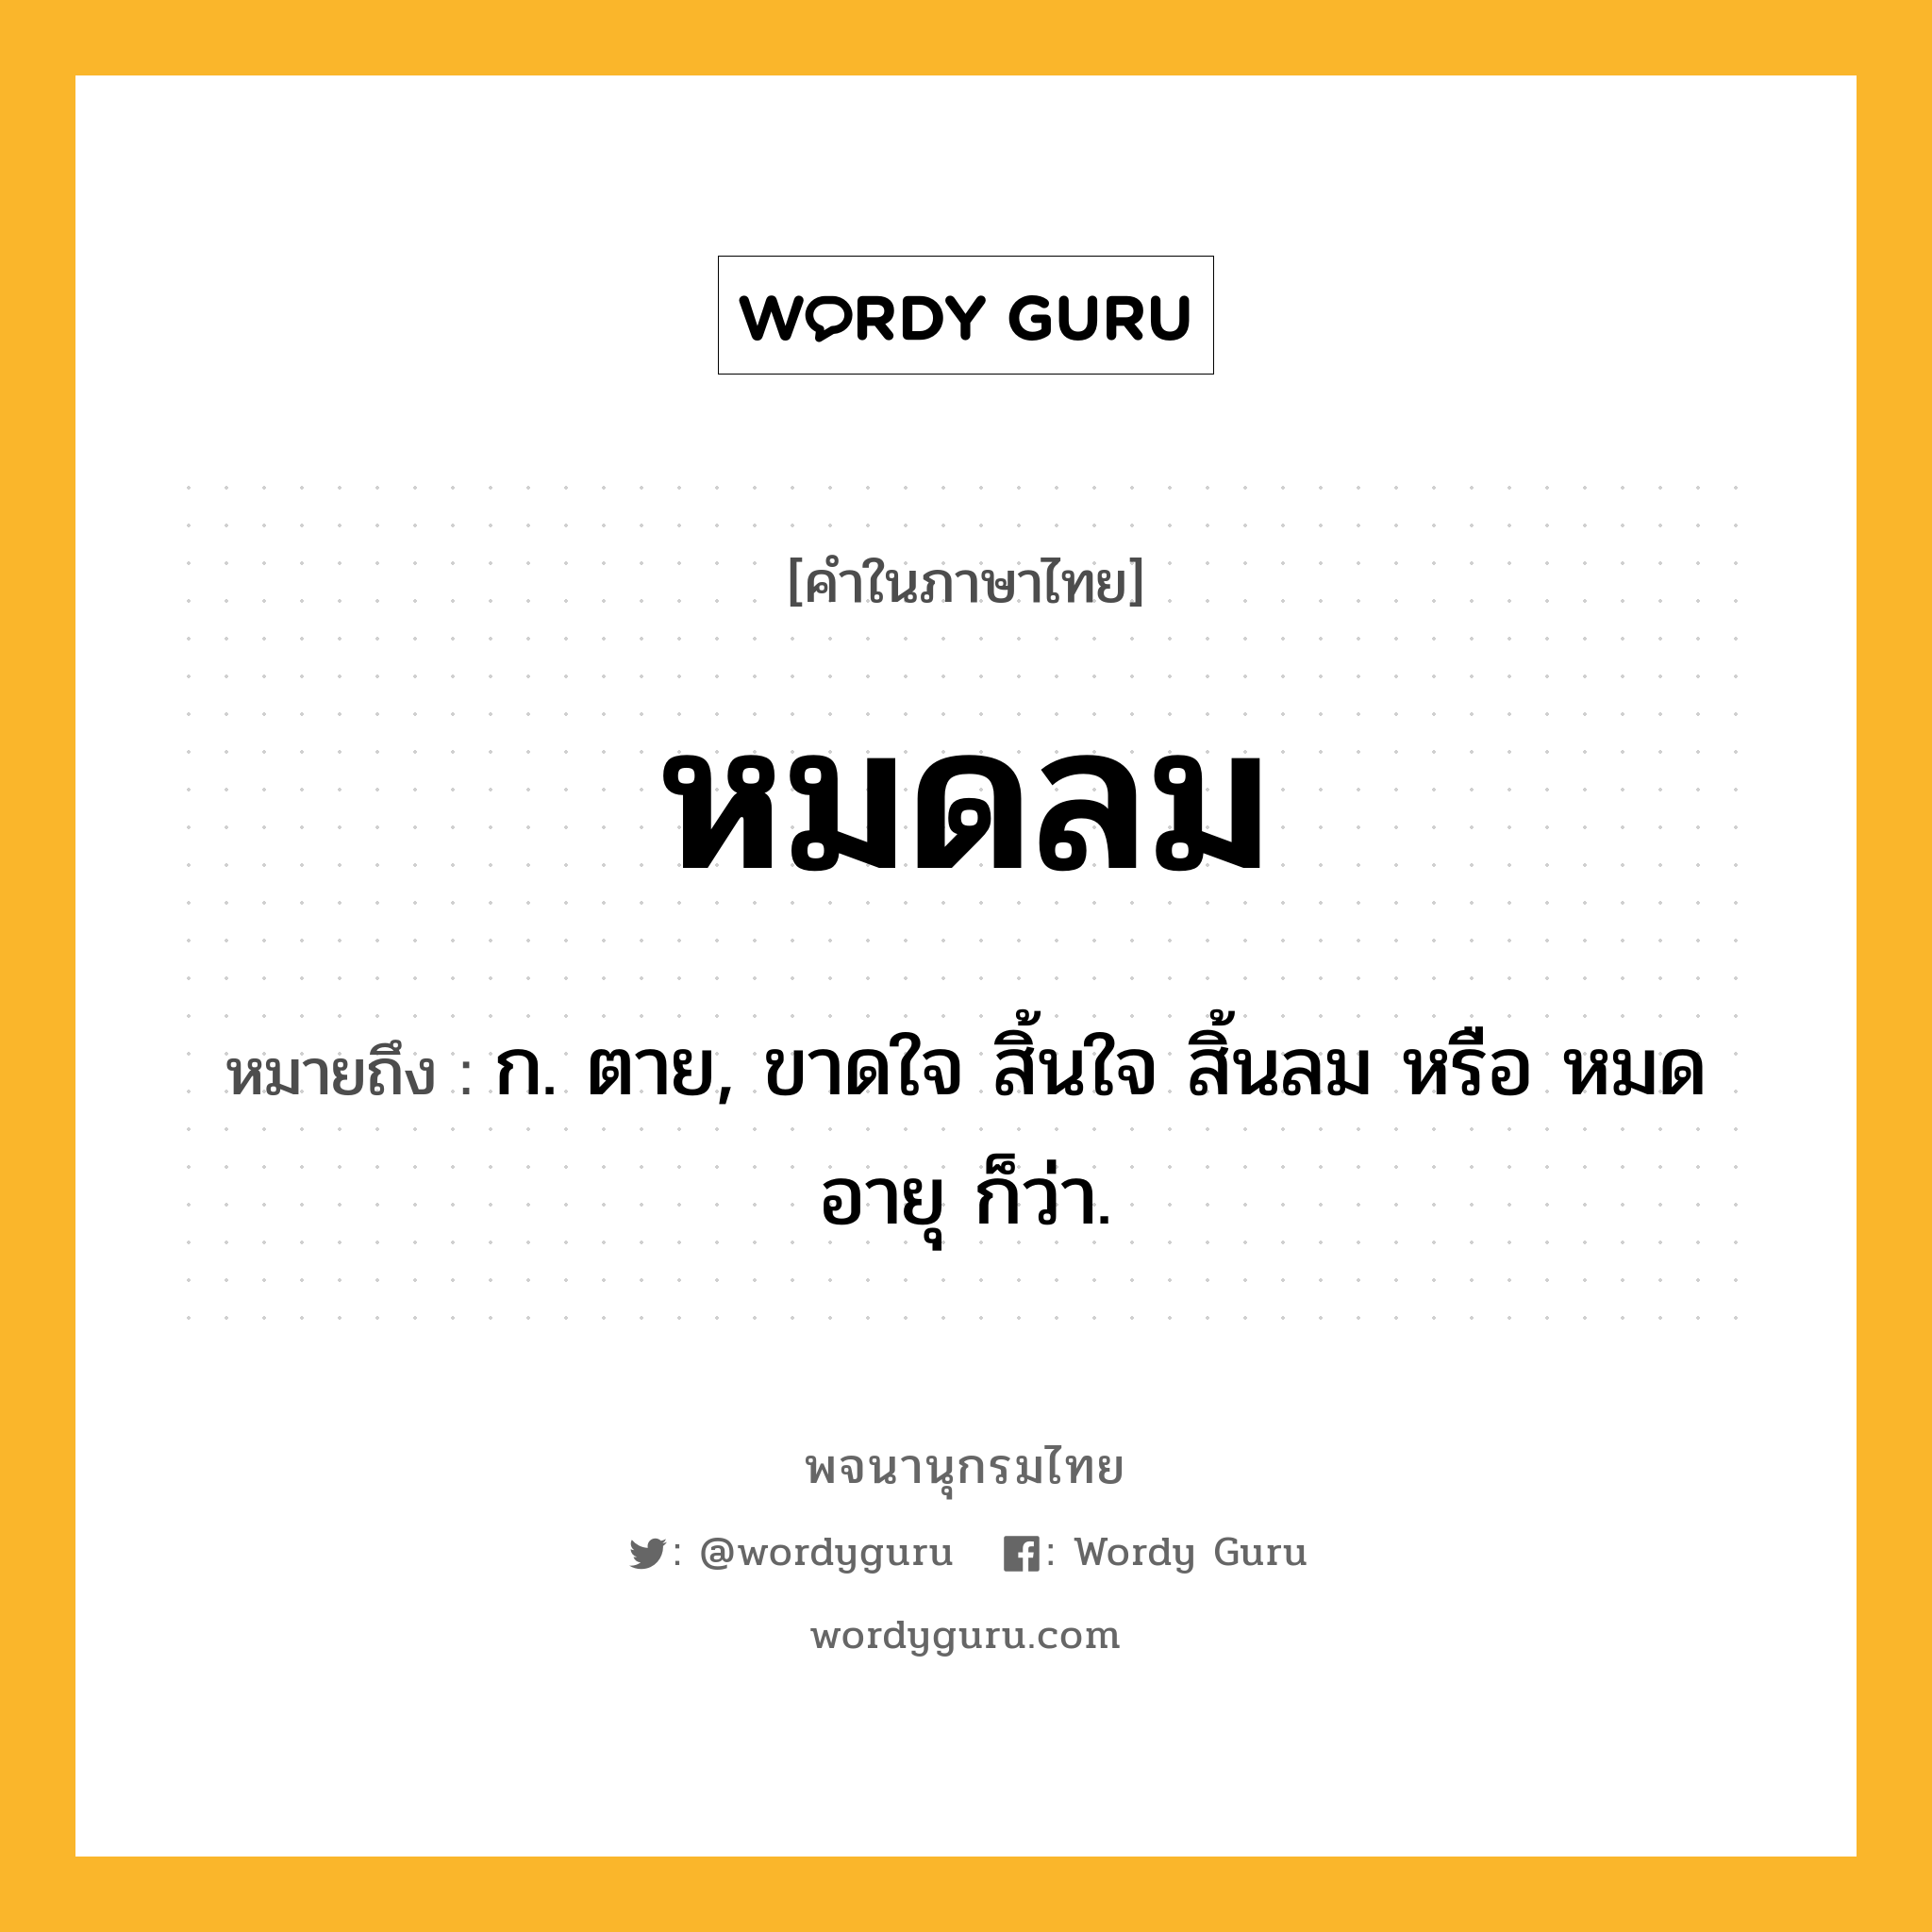 หมดลม ความหมาย หมายถึงอะไร?, คำในภาษาไทย หมดลม หมายถึง ก. ตาย, ขาดใจ สิ้นใจ สิ้นลม หรือ หมดอายุ ก็ว่า.